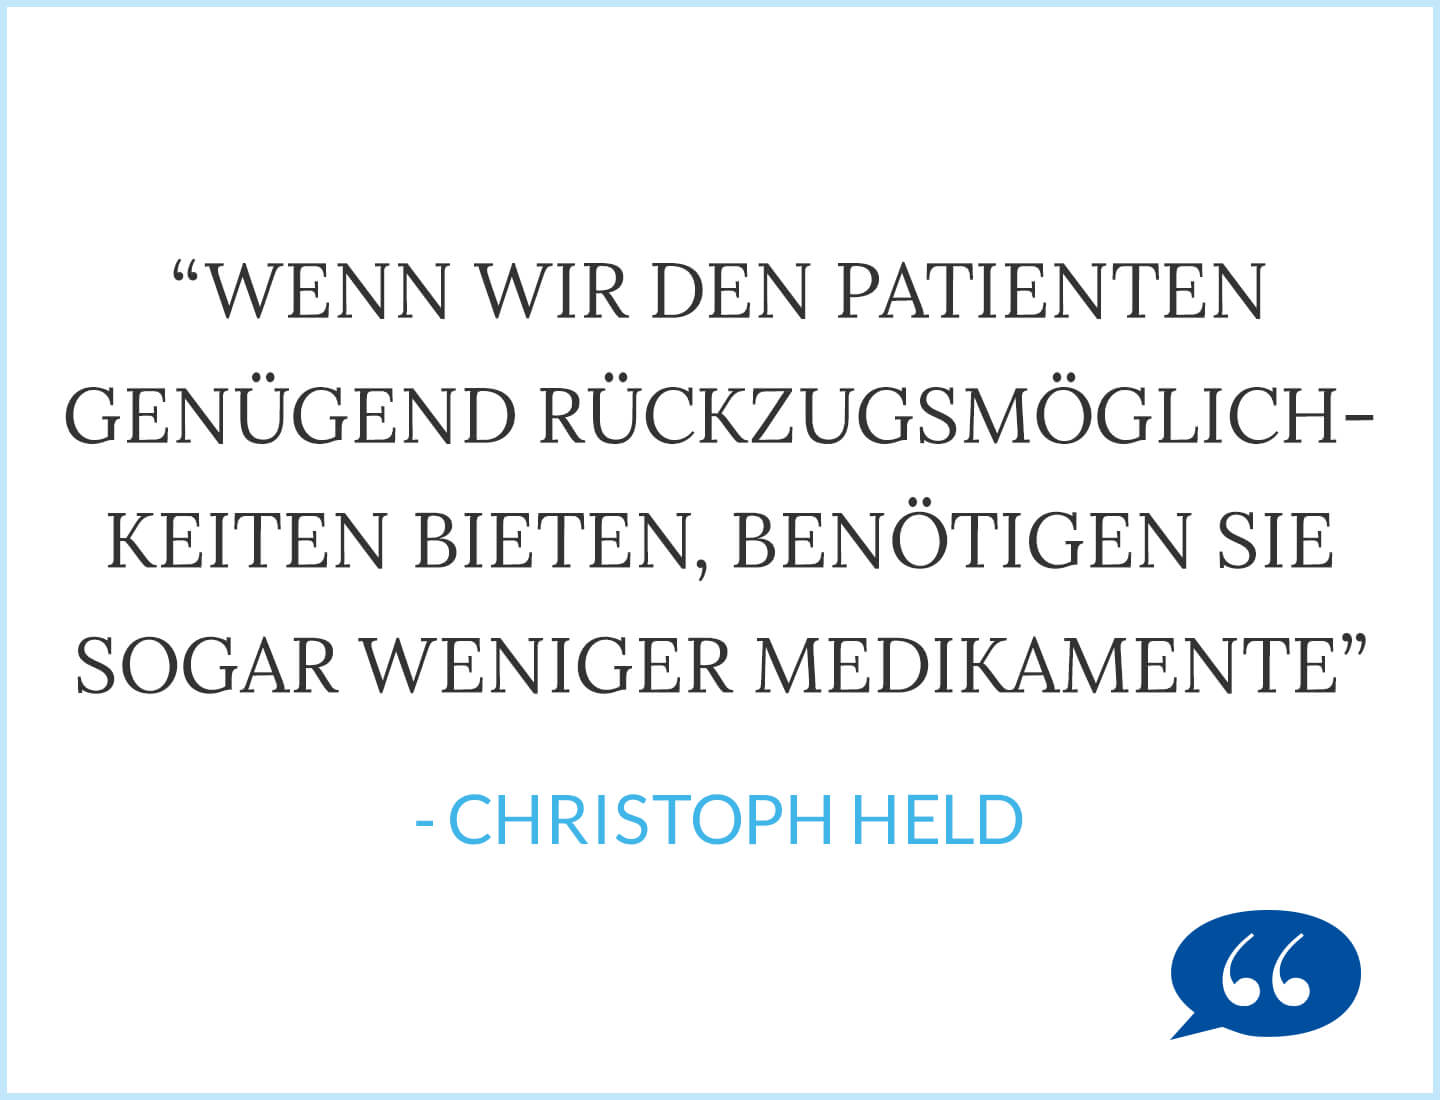 Wenn wir den Patienten genügend Rückzugsmöglichkeiten bieten, benötigen sie sogar weniger Medikamente - Christoph Held